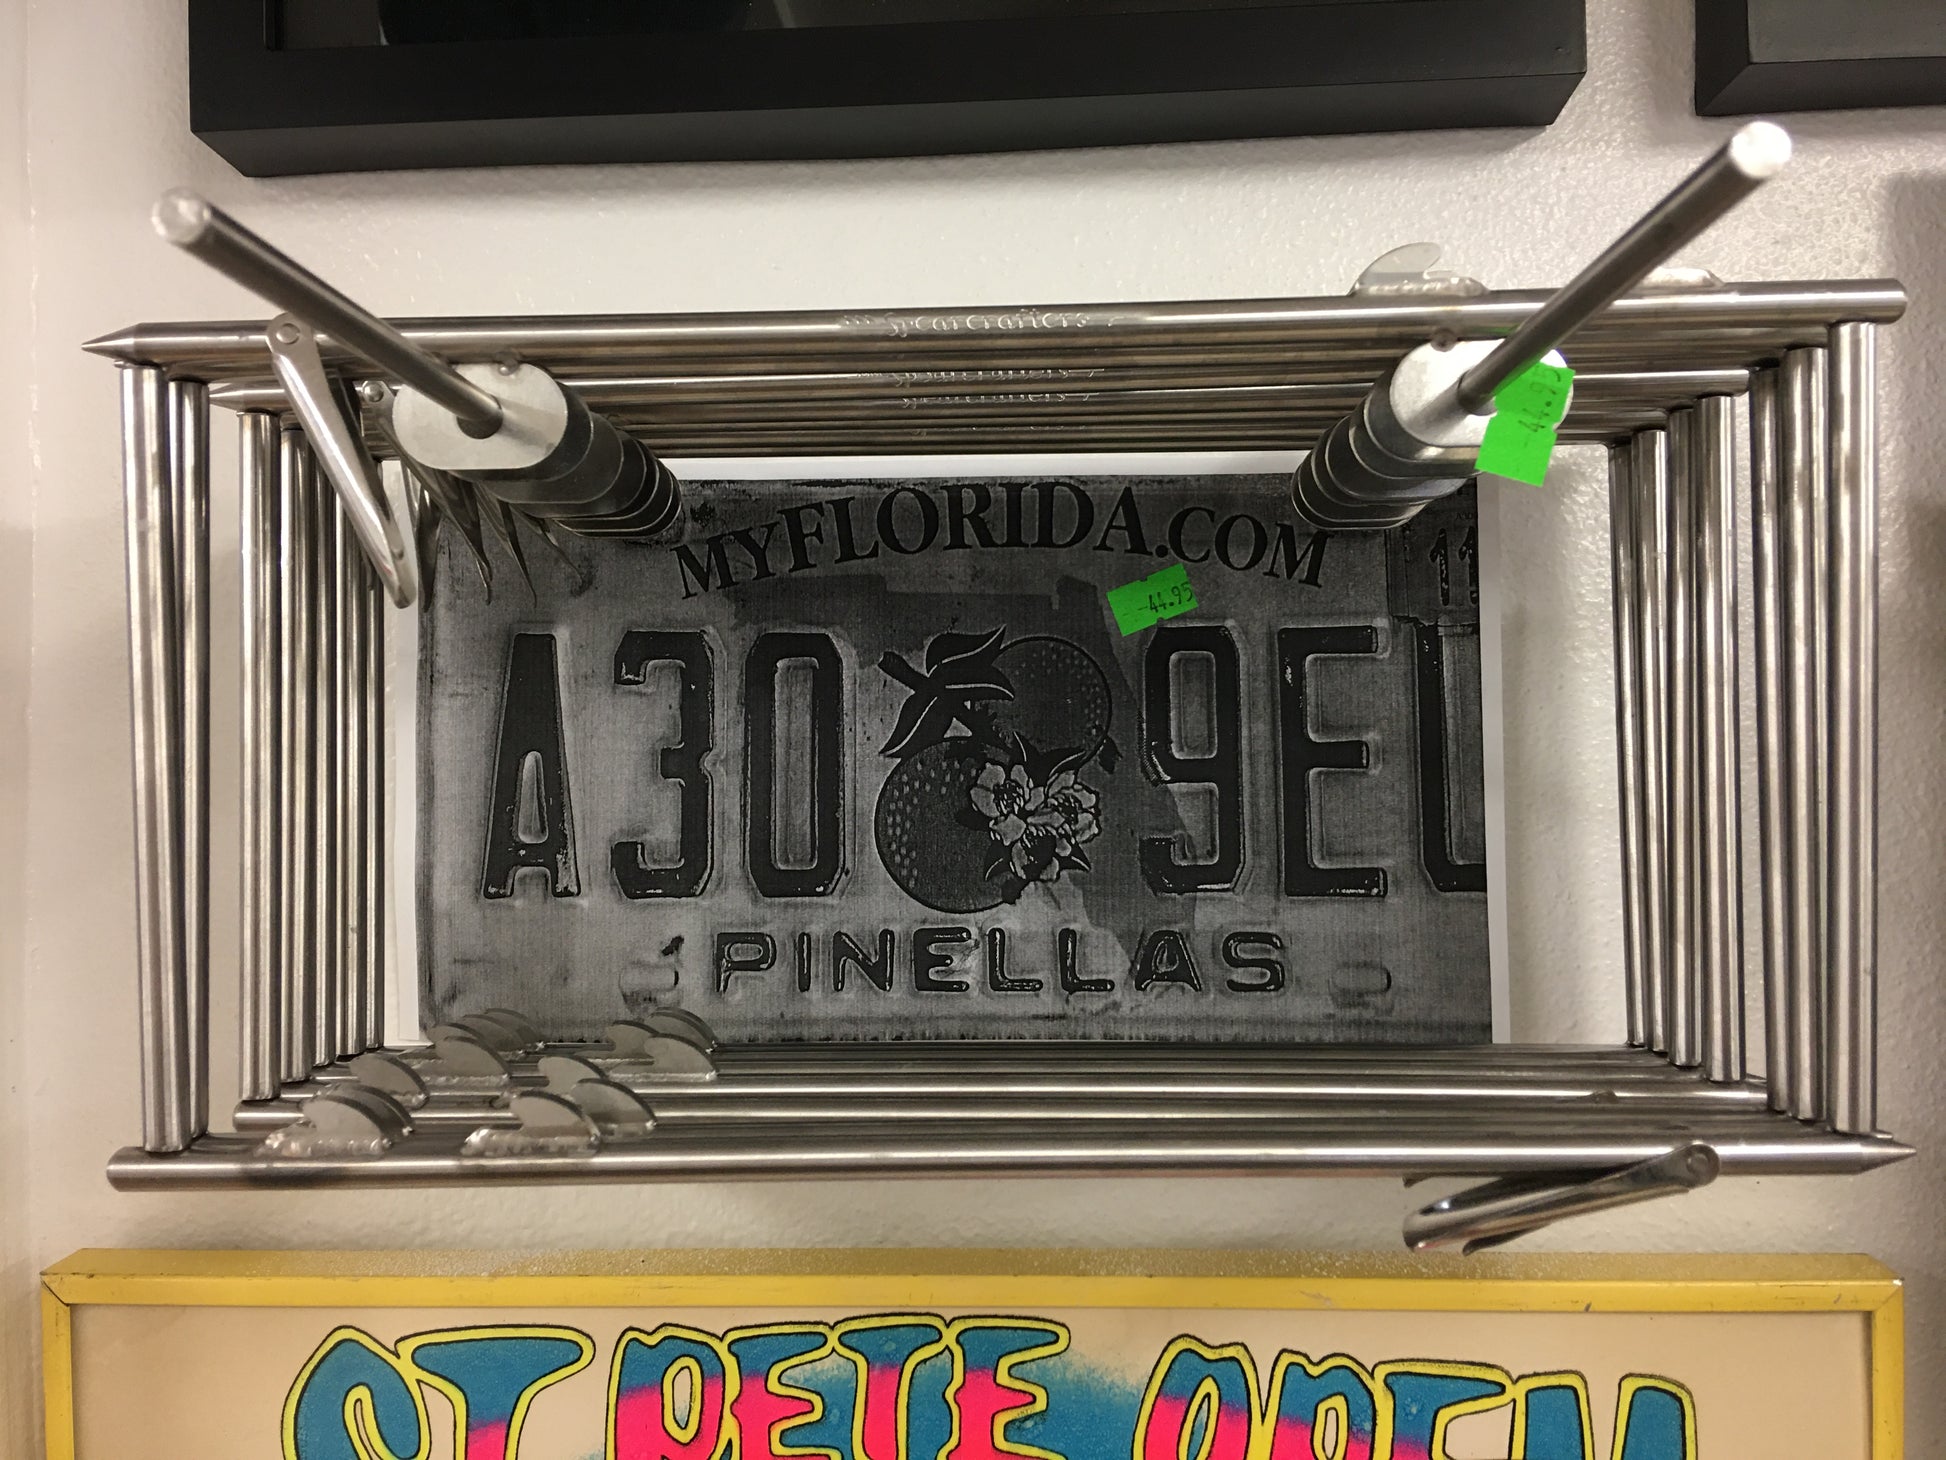 Spearfishing license plate holder - Spear Gods